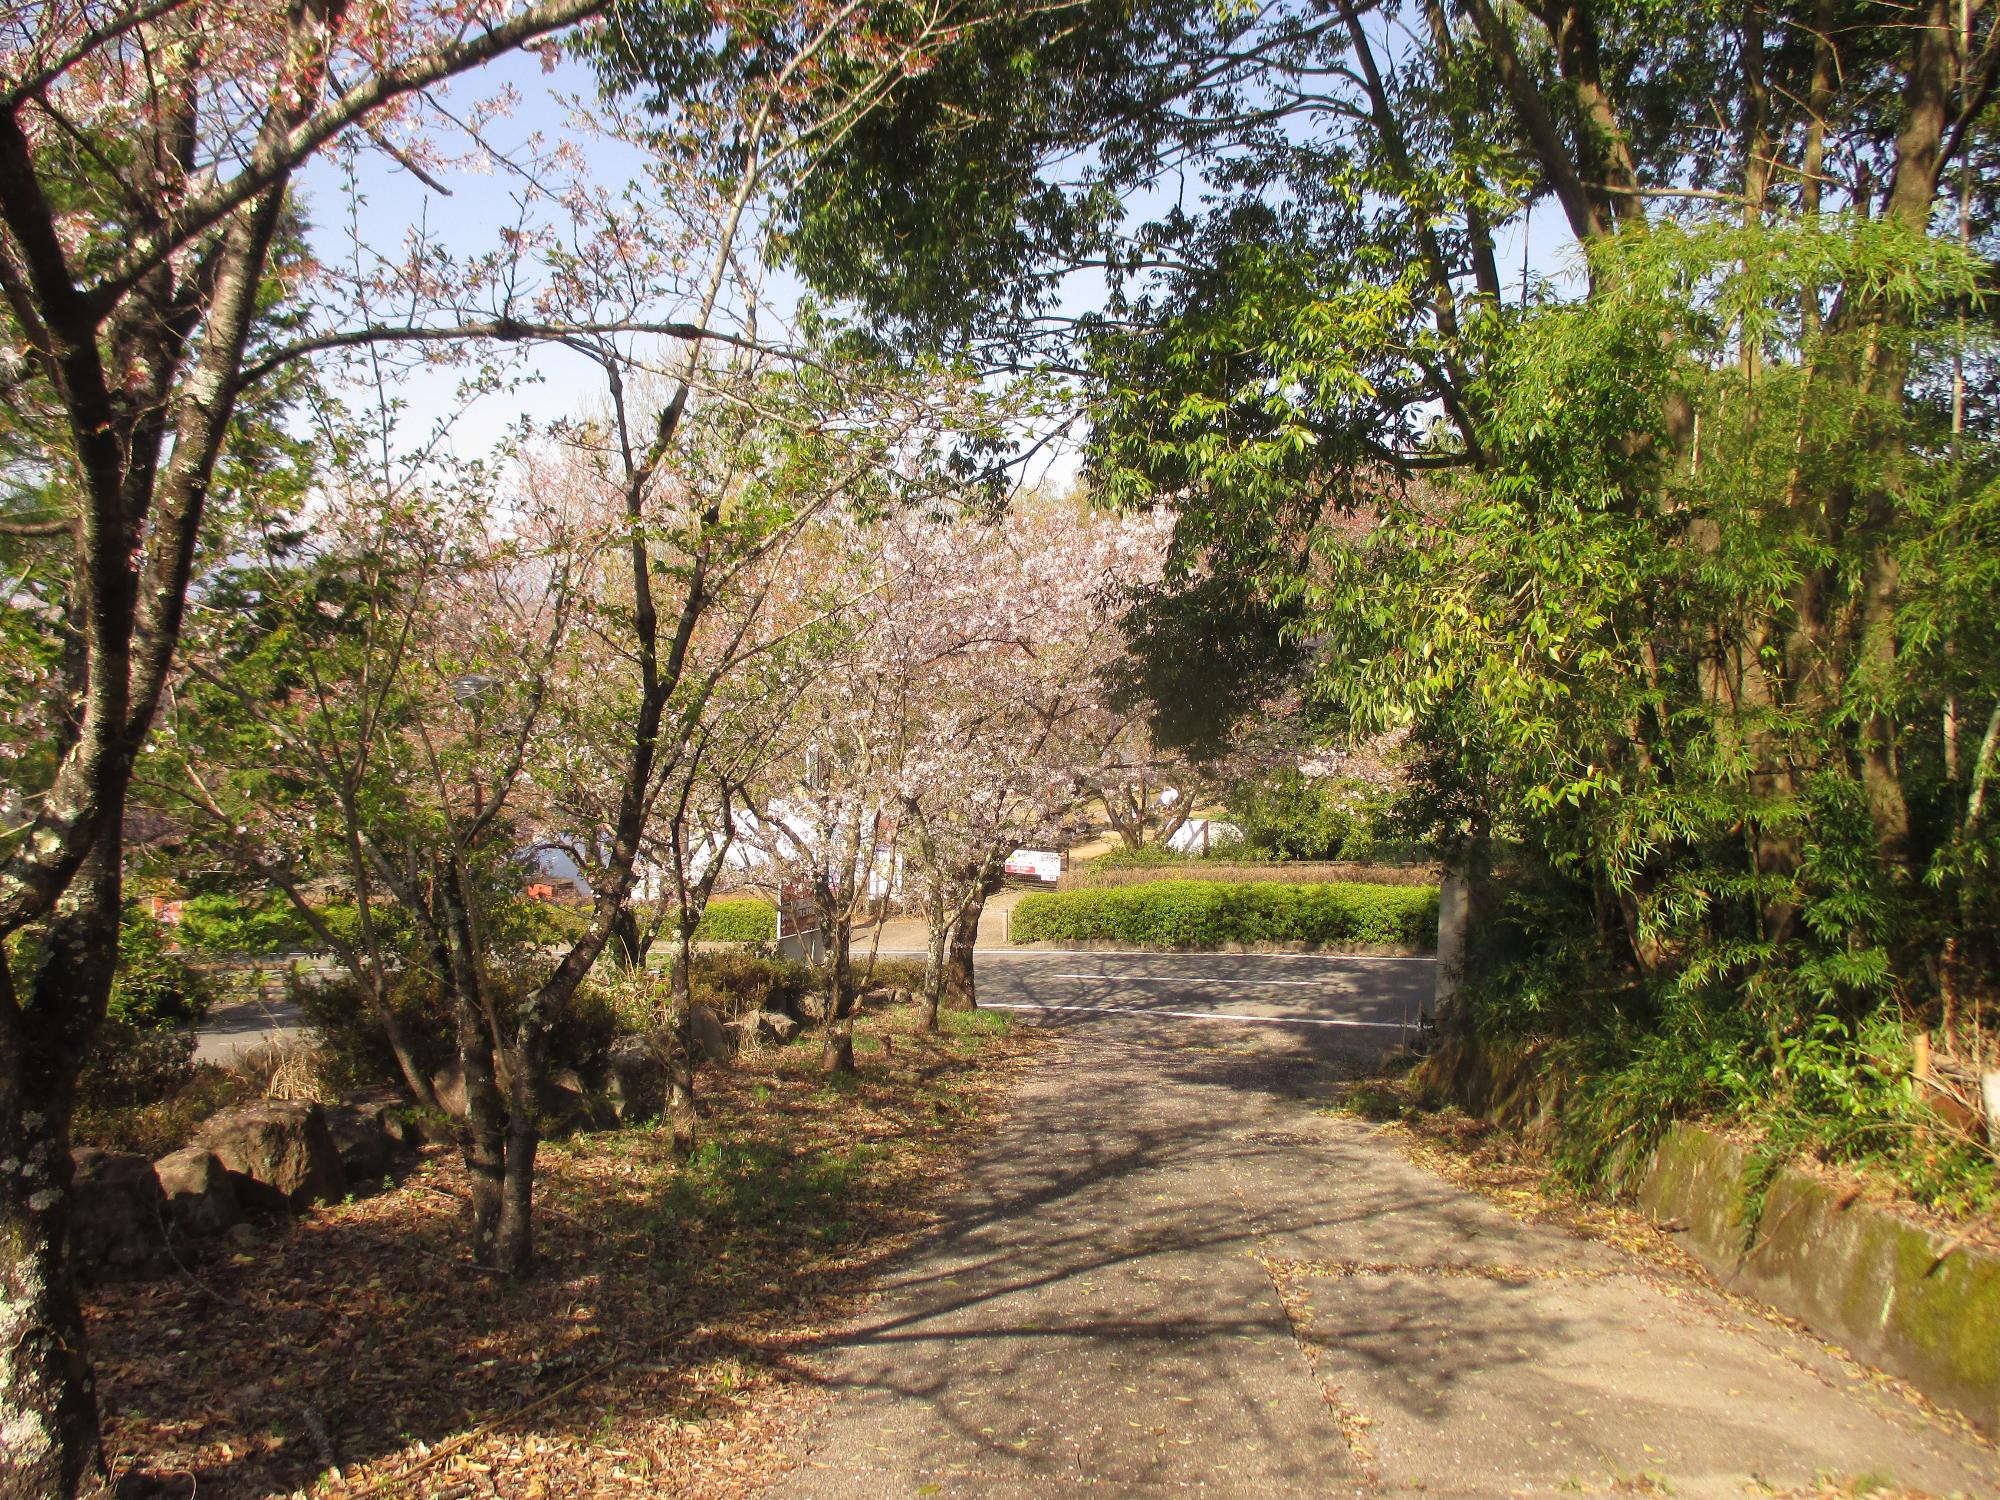 シルクの里公園の桜の開花状況